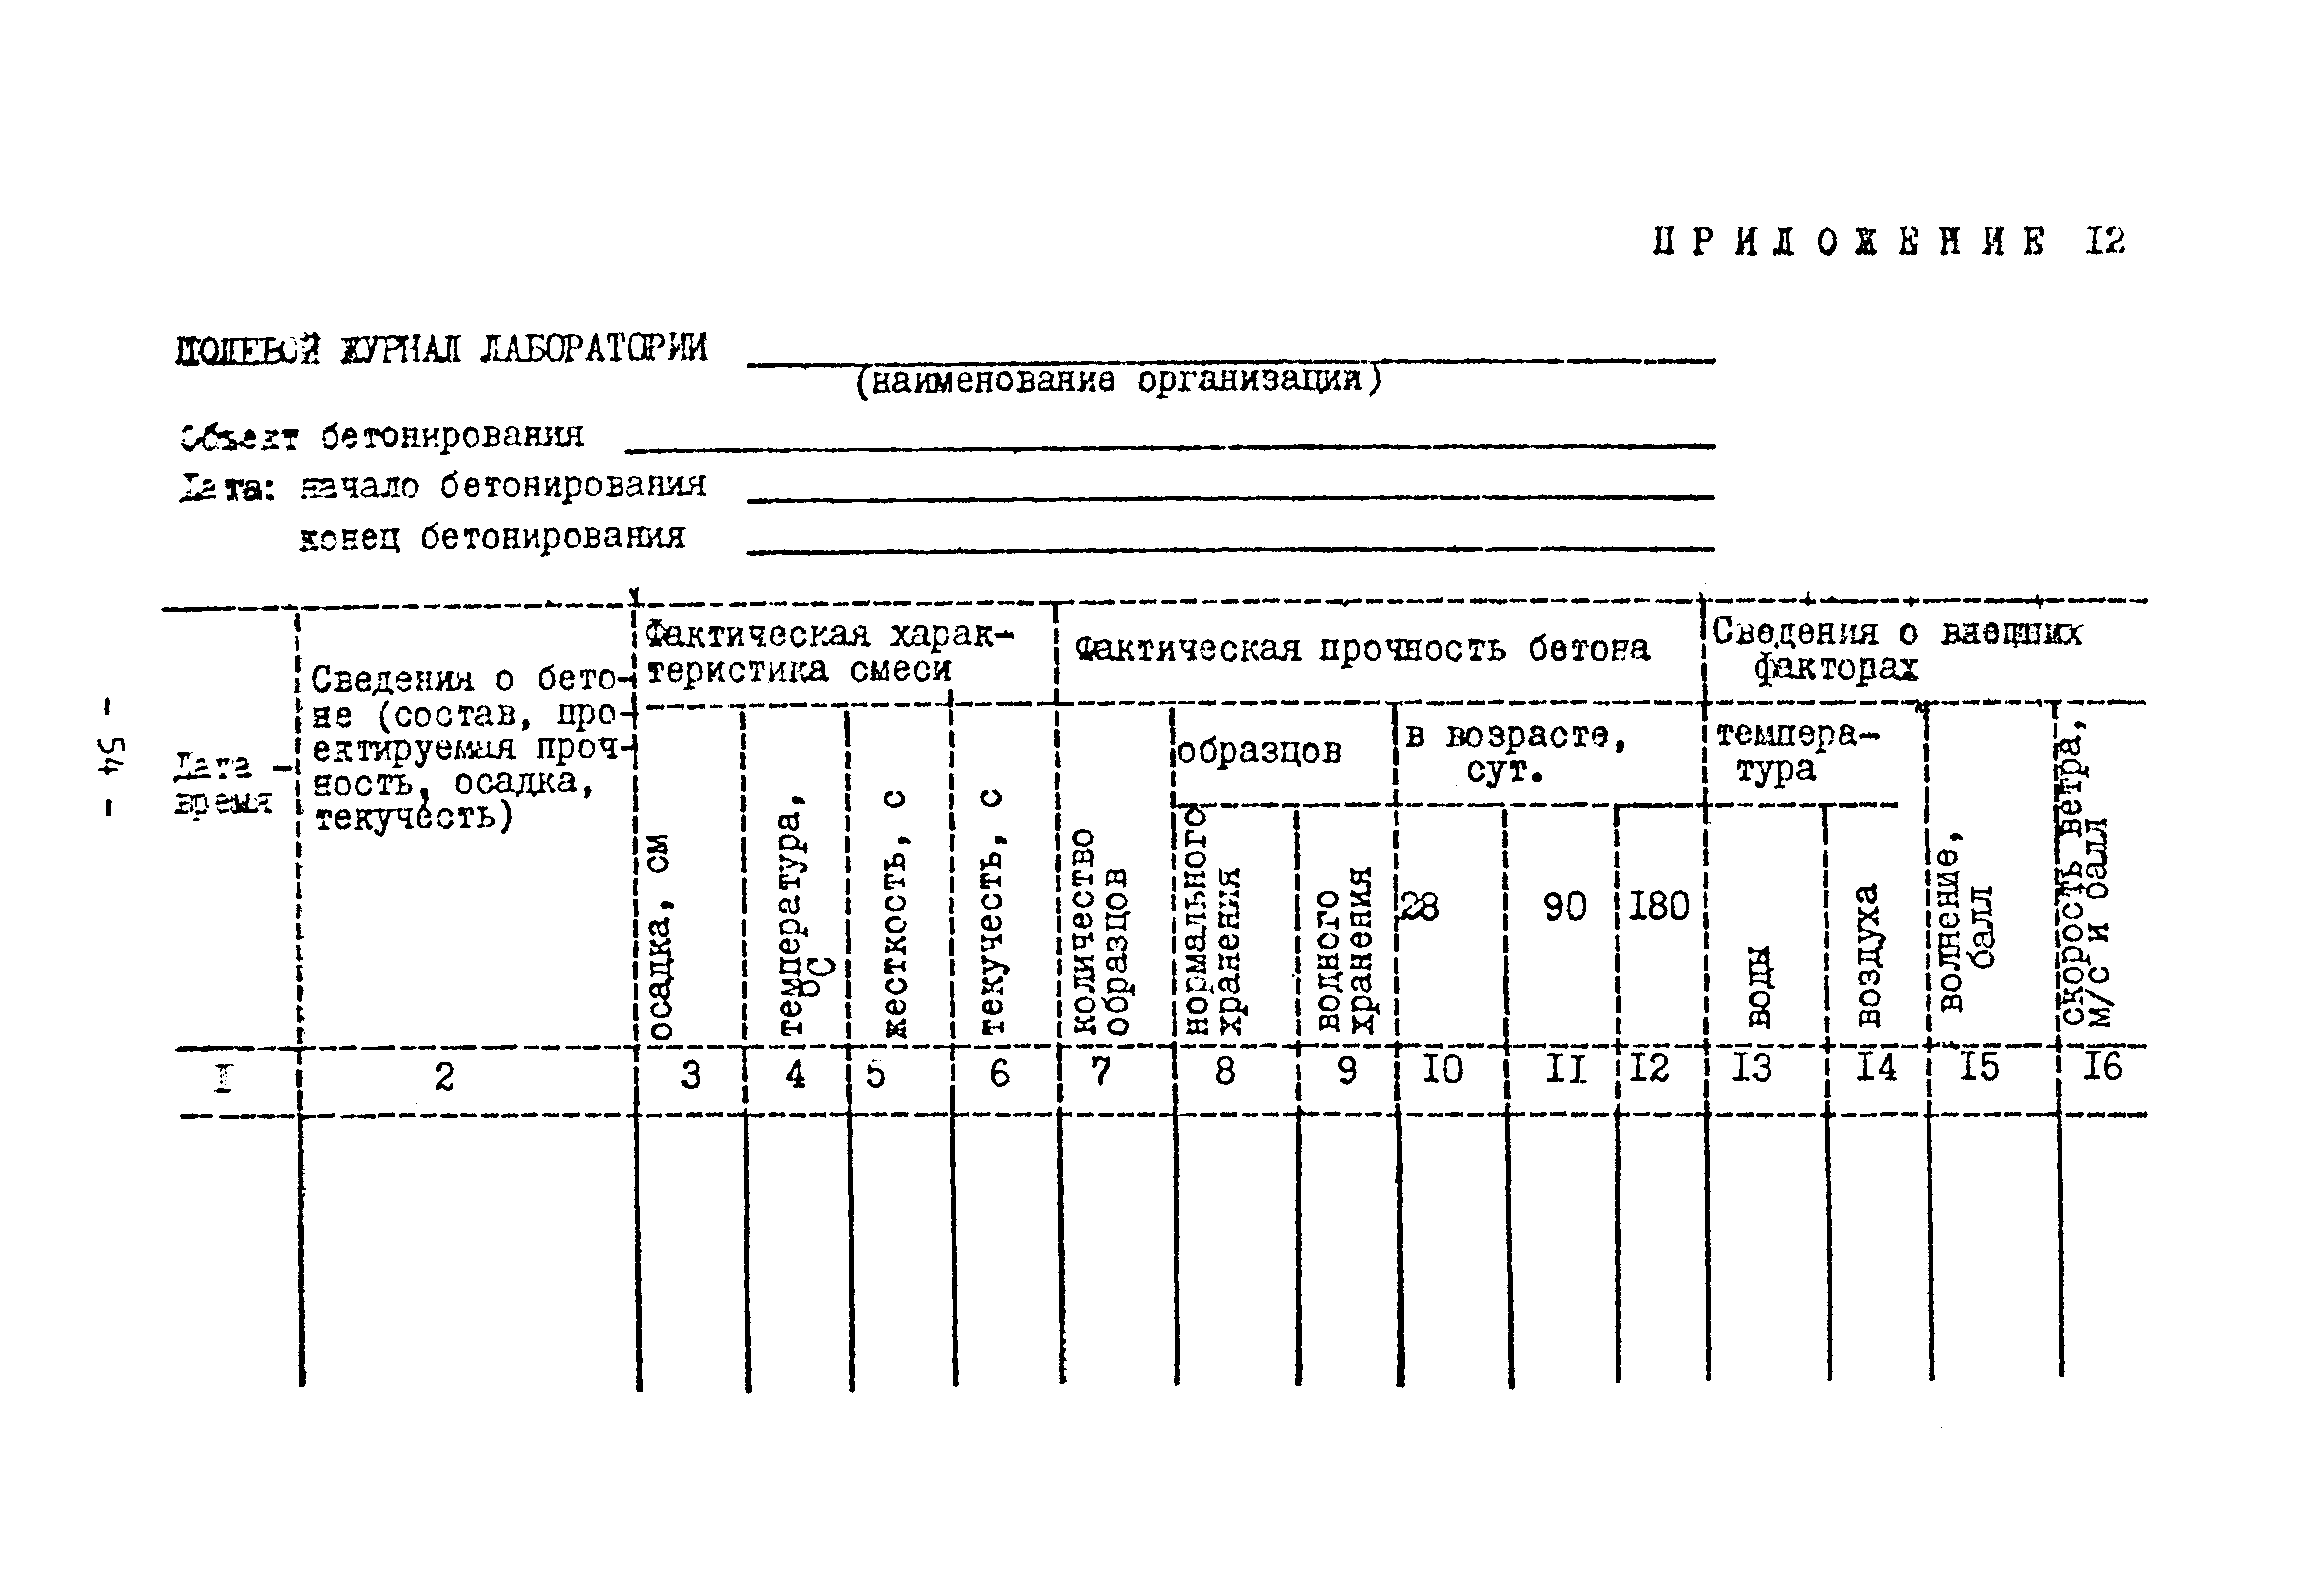 ВСН 261-77/ММСС СССР